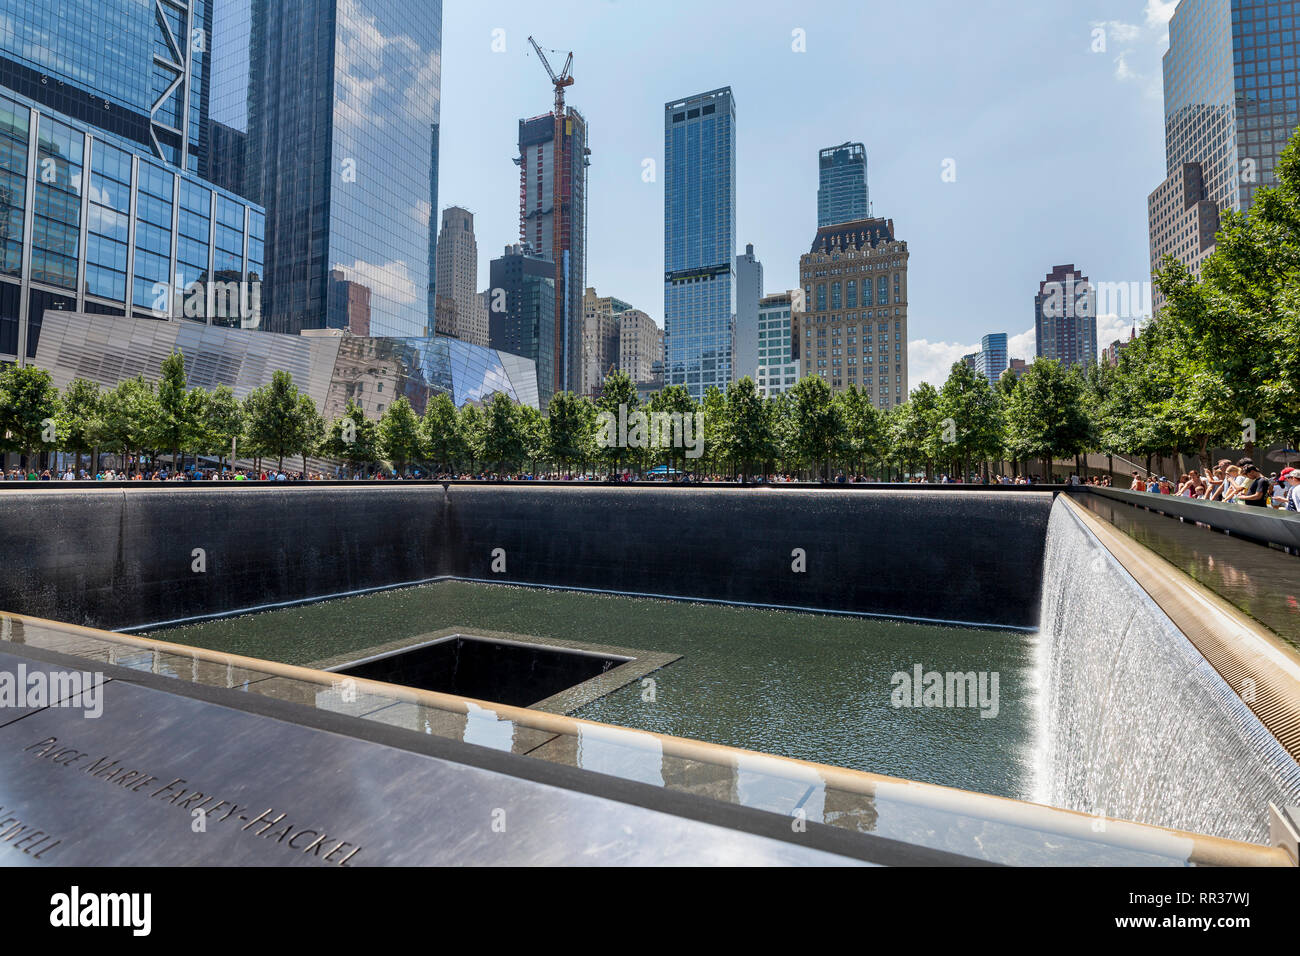 World Trade Center le 11 septembre, la piscine à débordement mémoire Amérique du Sud de Manhattan, New York, NY, USA Banque D'Images